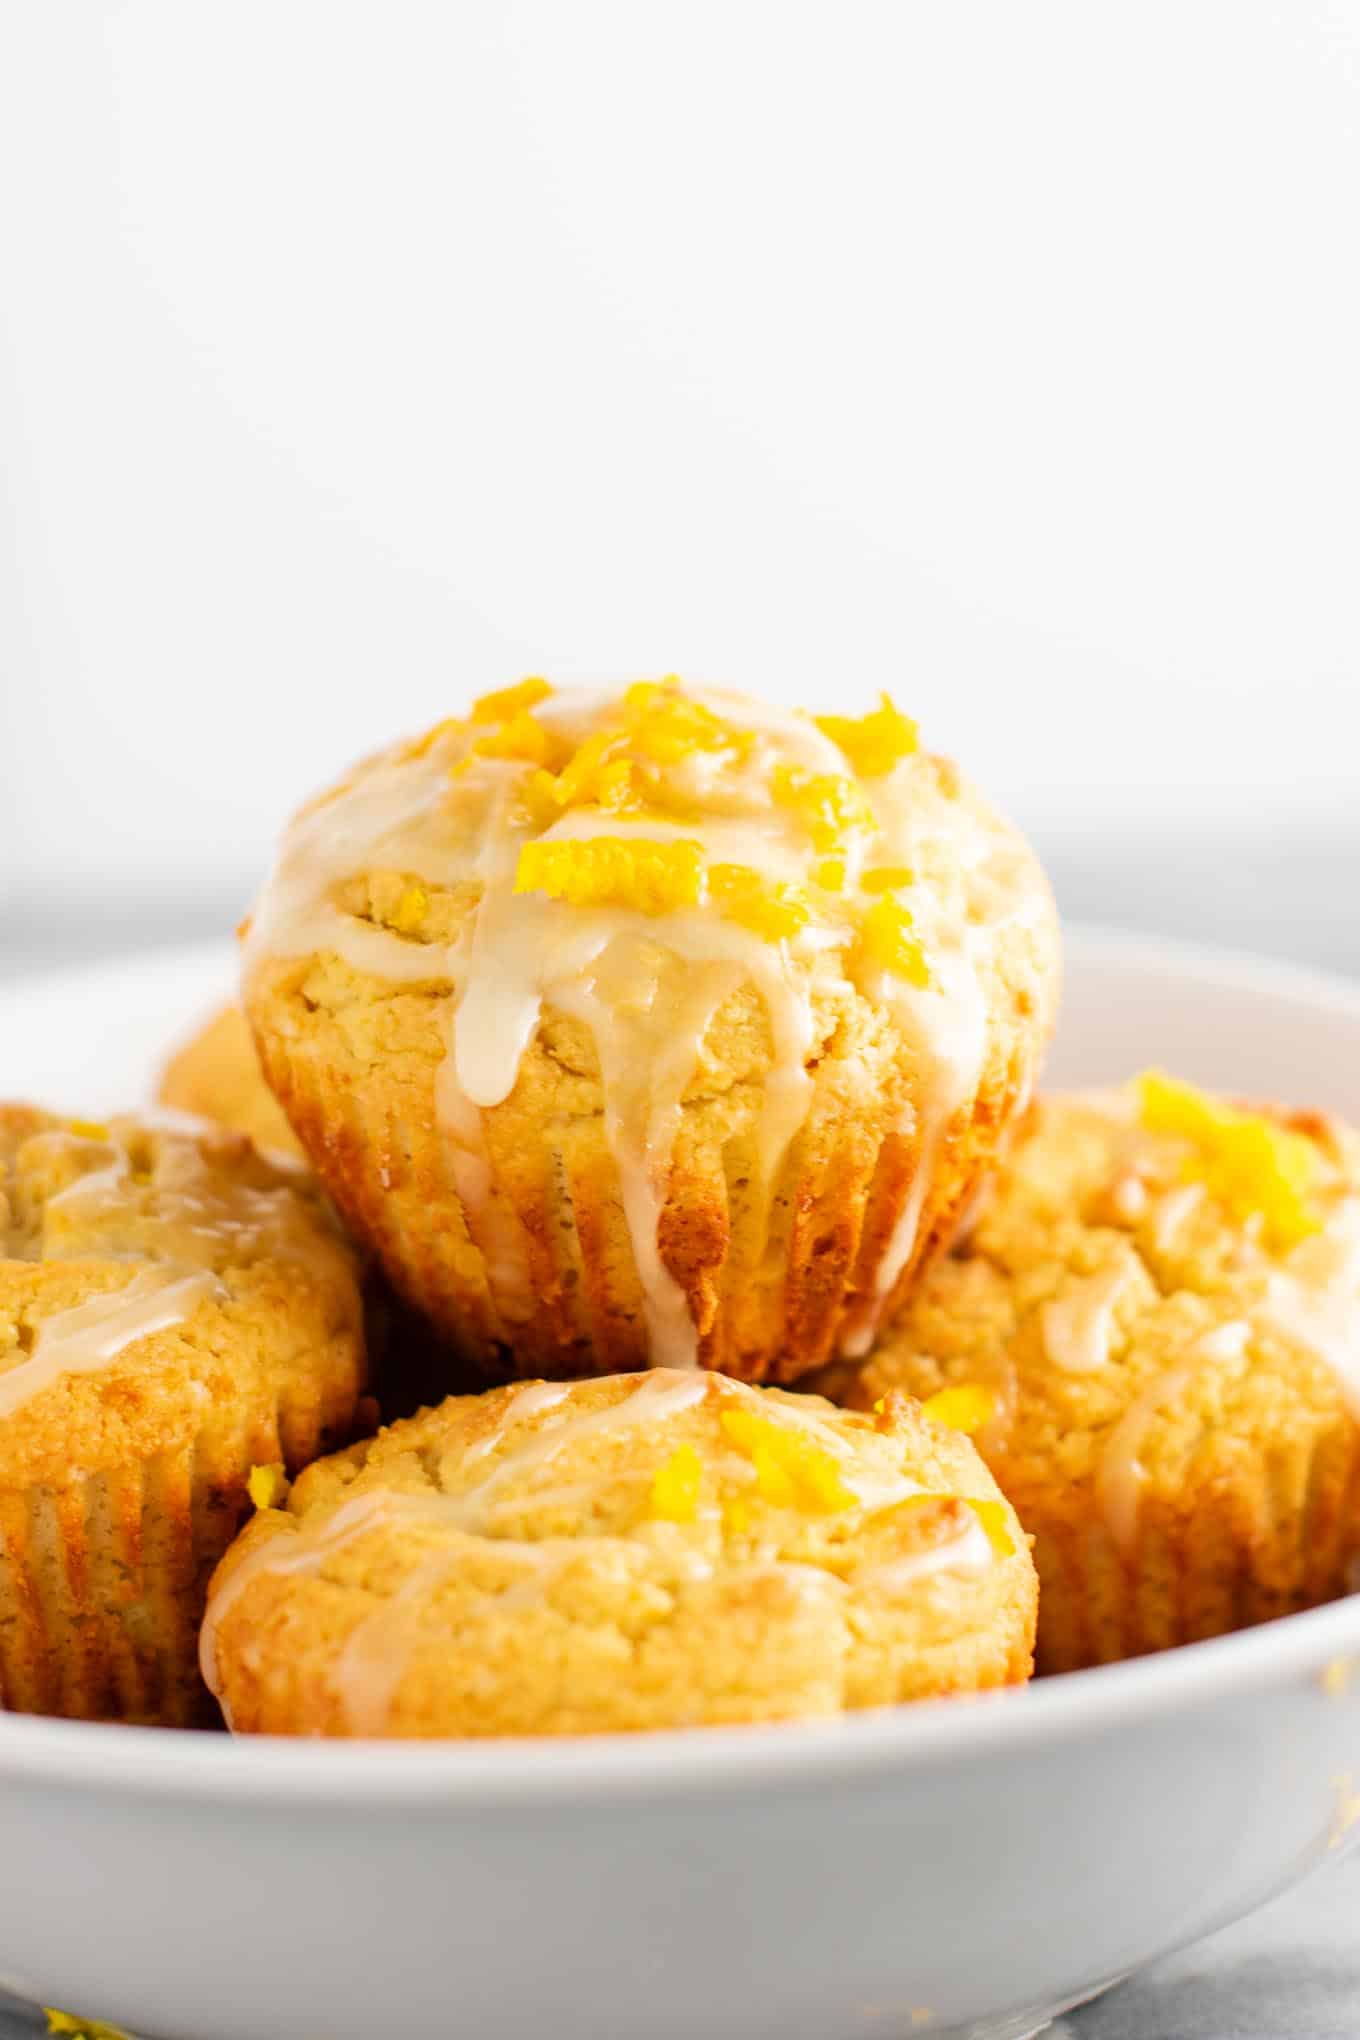 Gluten free muffins recipe with sweet orange glaze 